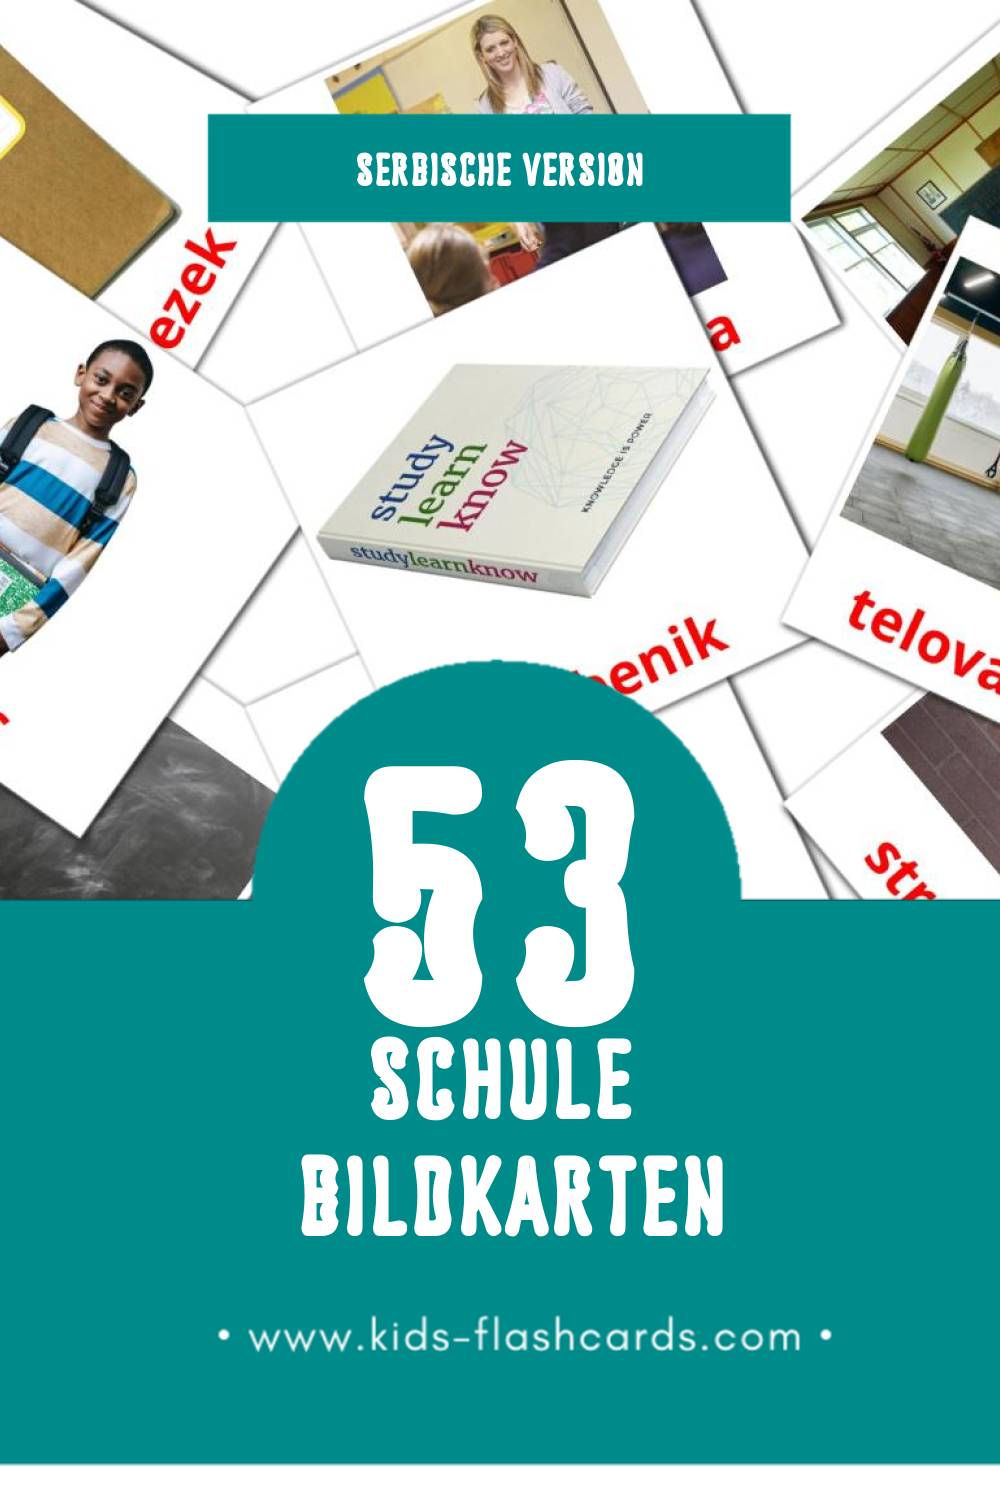 Visual Šola Flashcards für Kleinkinder (53 Karten in Serbisch)